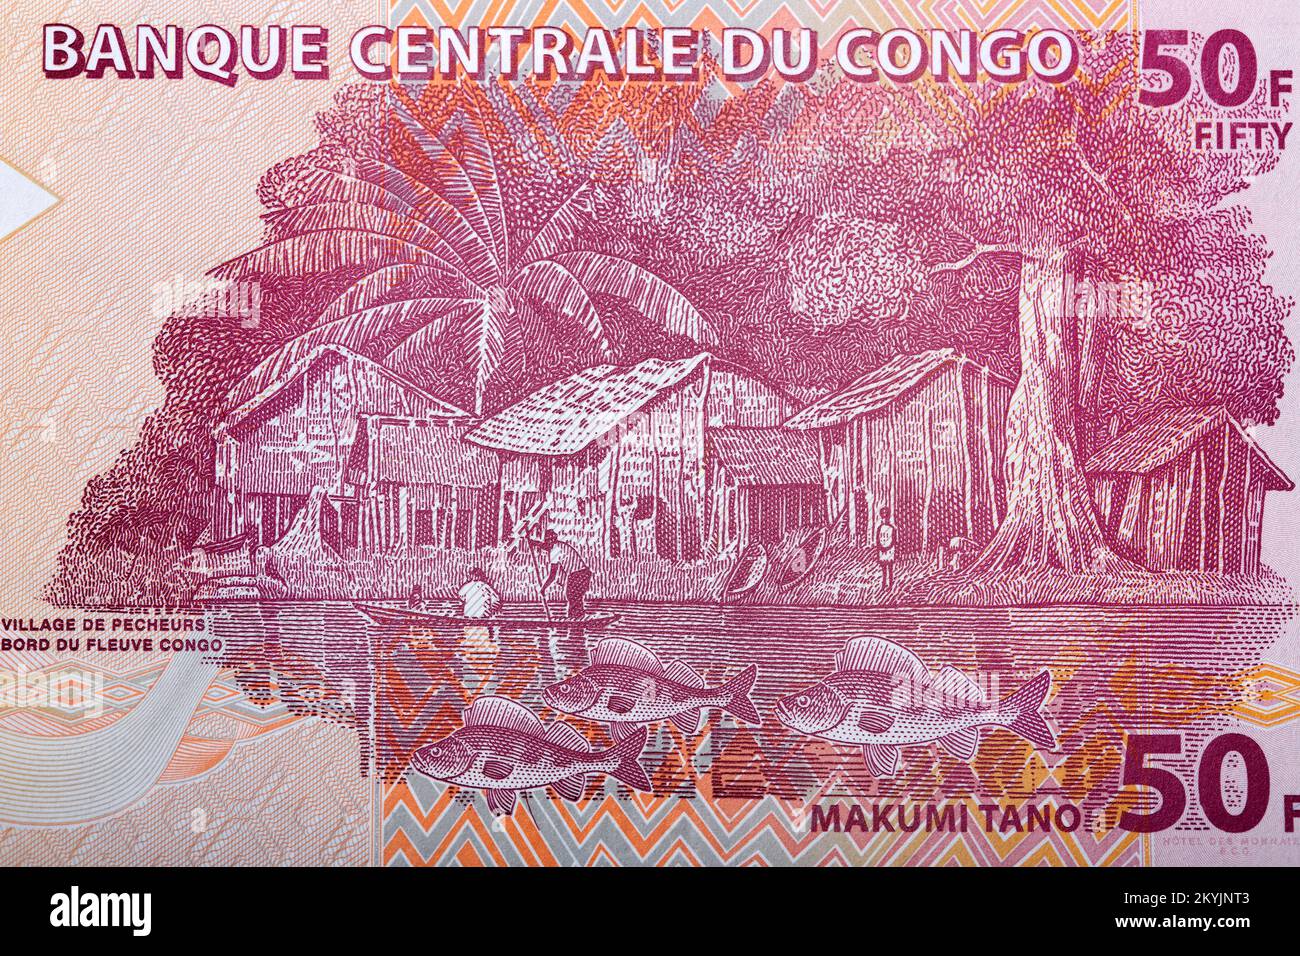 Village de pêcheurs le long du fleuve Congo de l'argent congolais - franc Banque D'Images